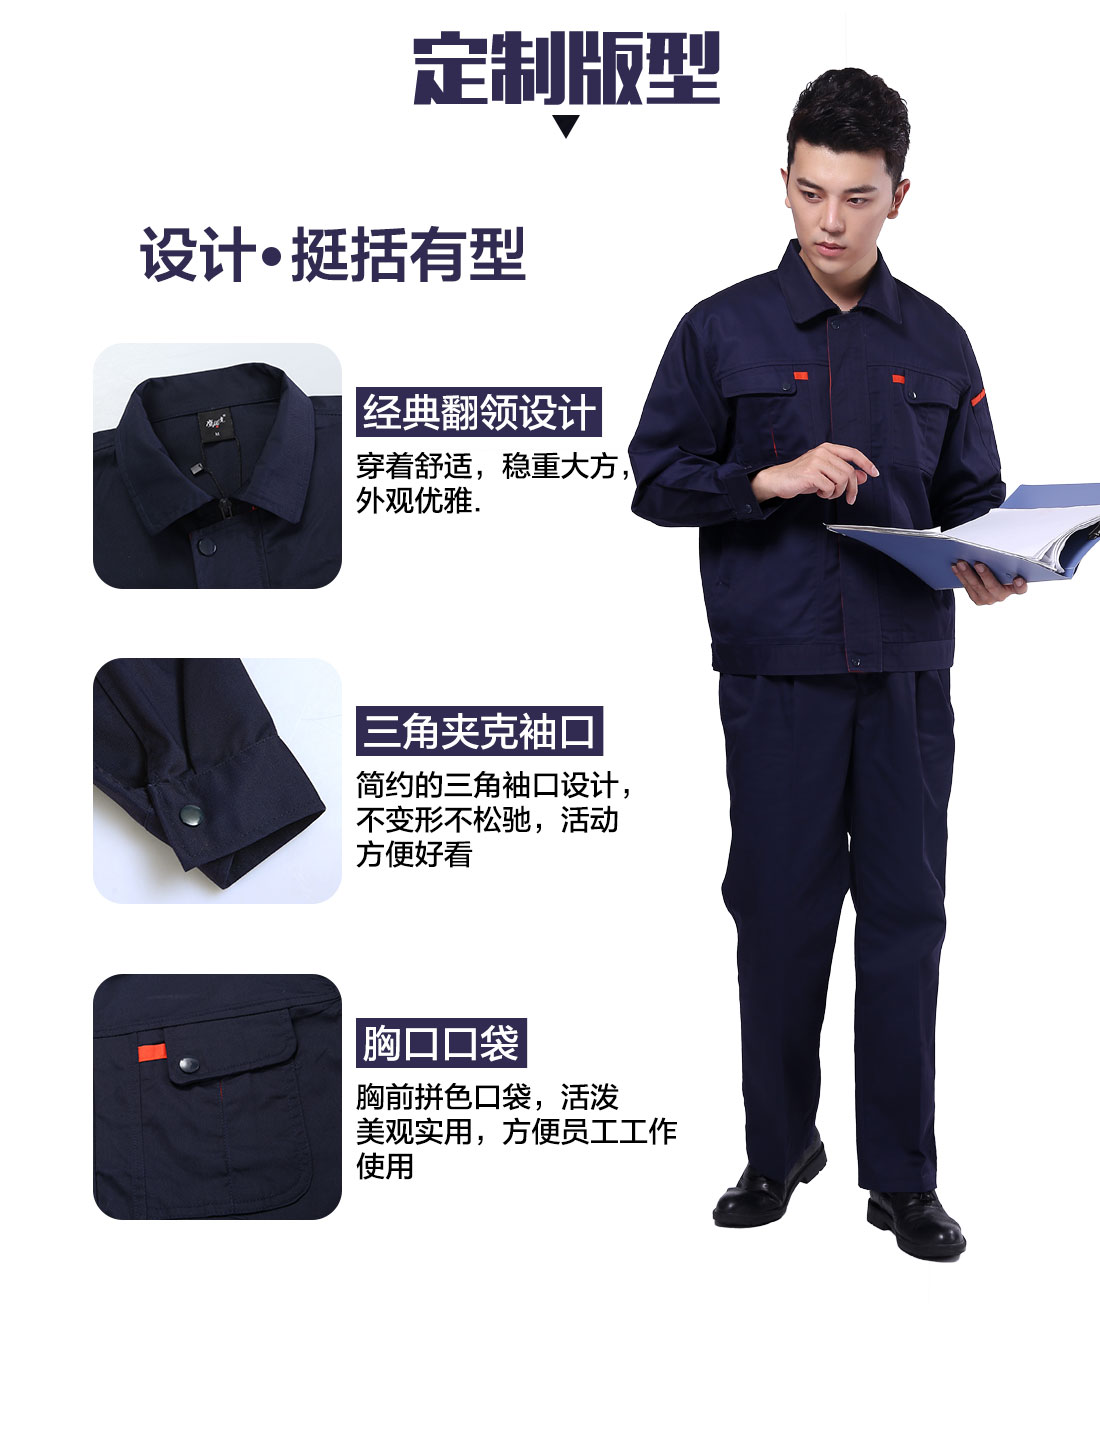 长袖工作服套装设计定制版型